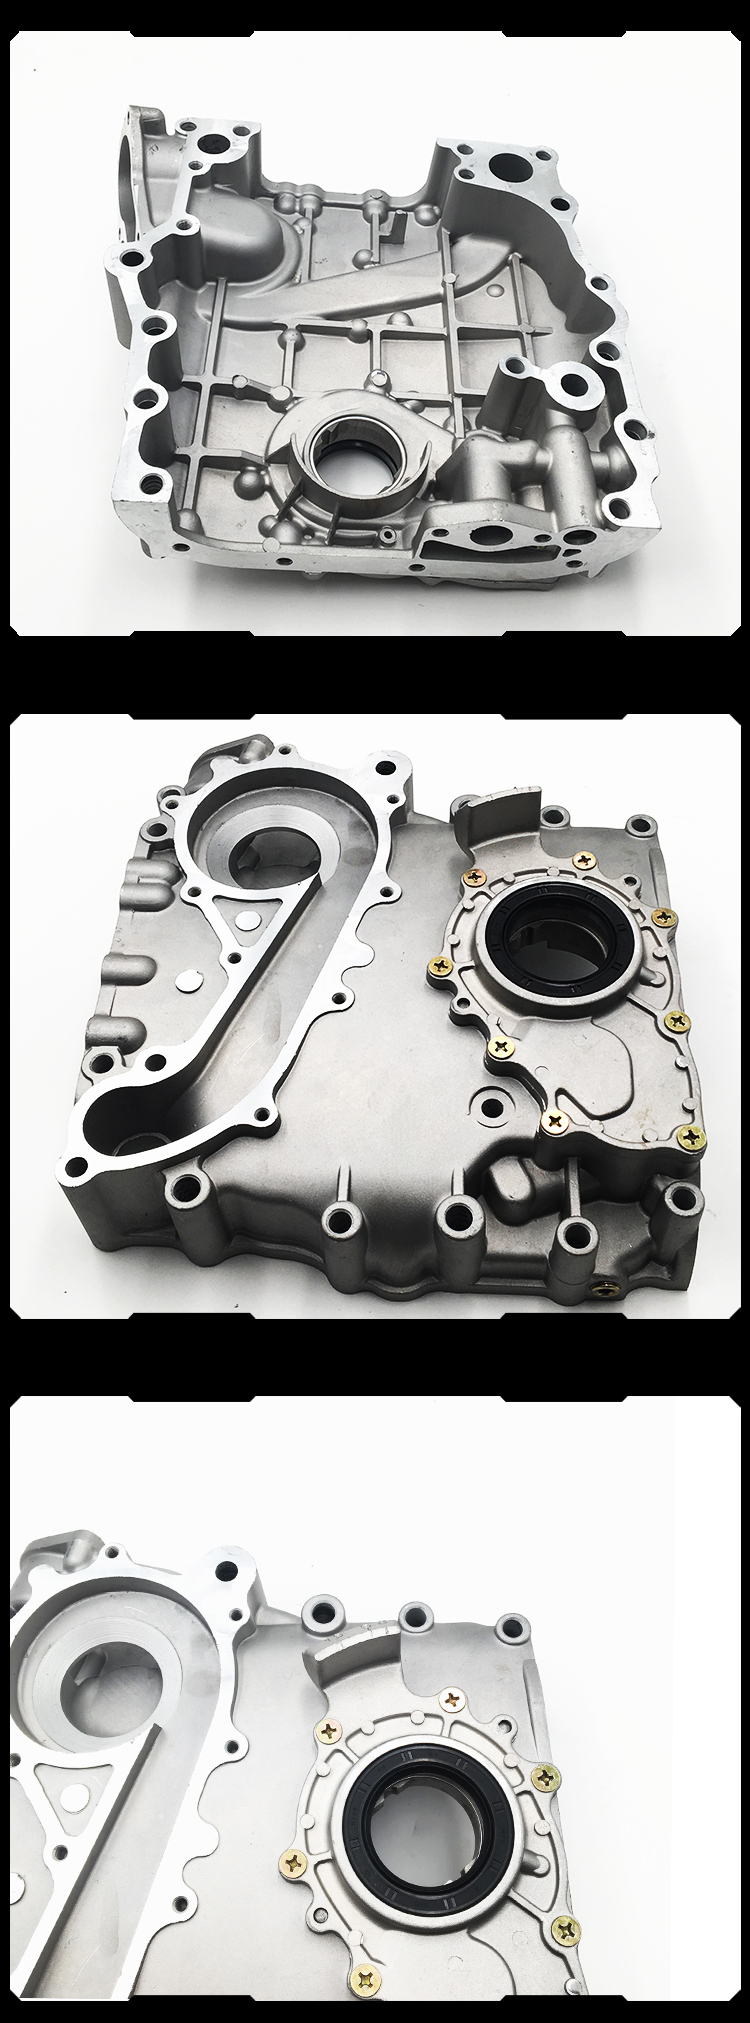 11301-75050 Auto Engine Part Aluminum Oil Pump for TOYOTA HILUX HIACE VAN 2RZ